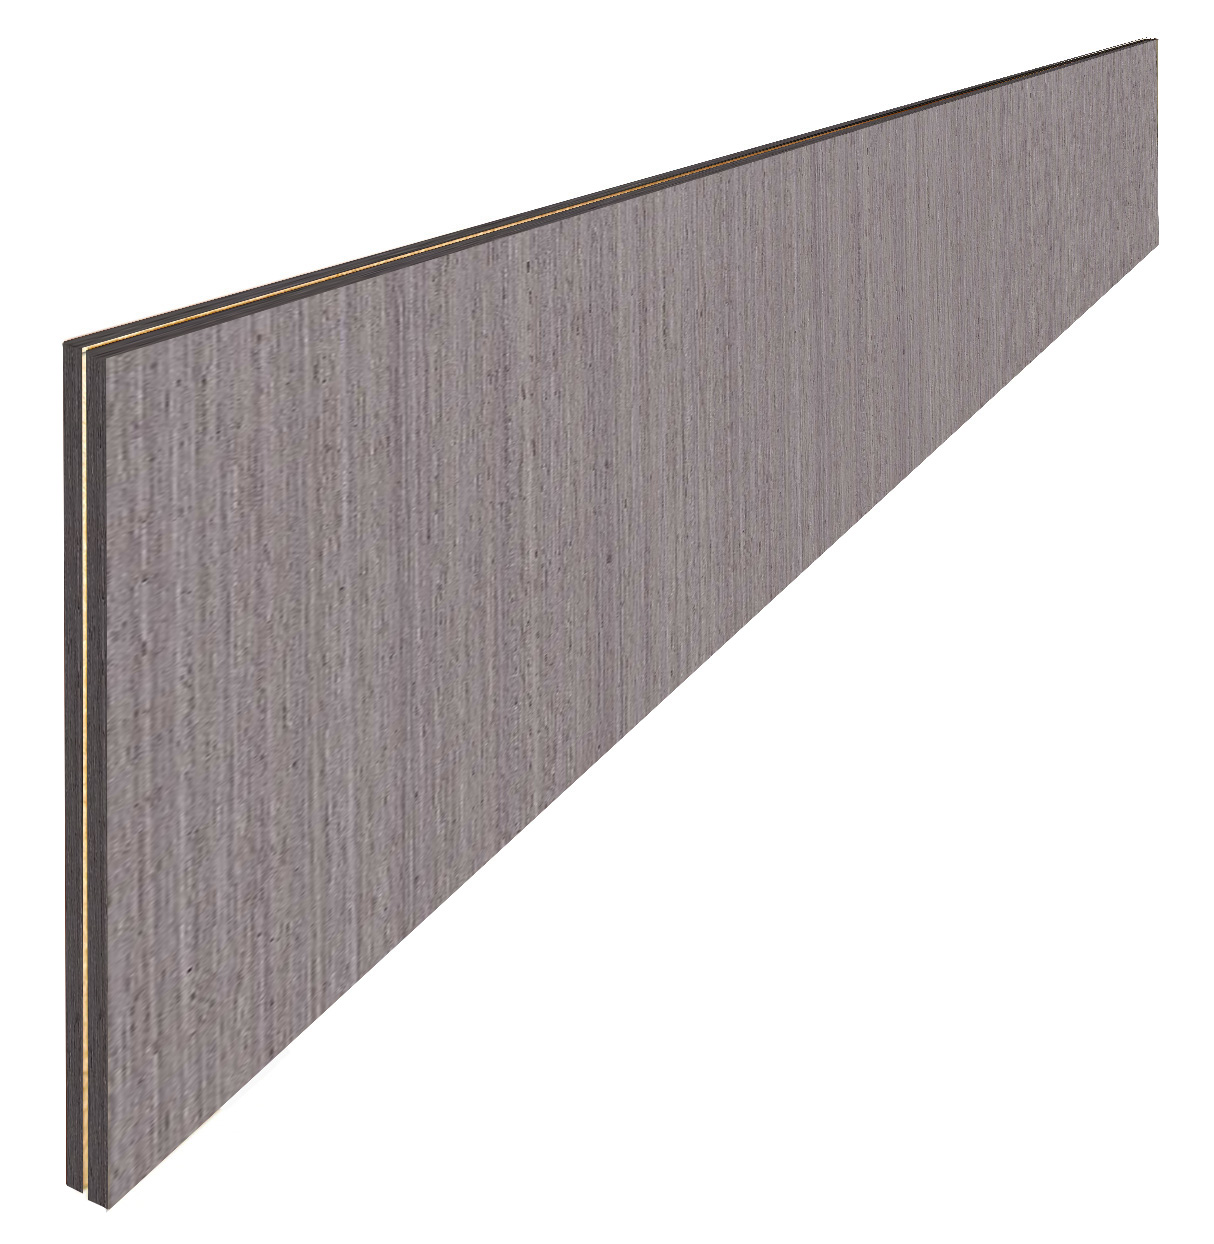 Стеновая панель Lazashpan шпон файн-лайн Дуб 1 Q радиальный (серый) 1200*600мм LZ-FL121206002200000 шт